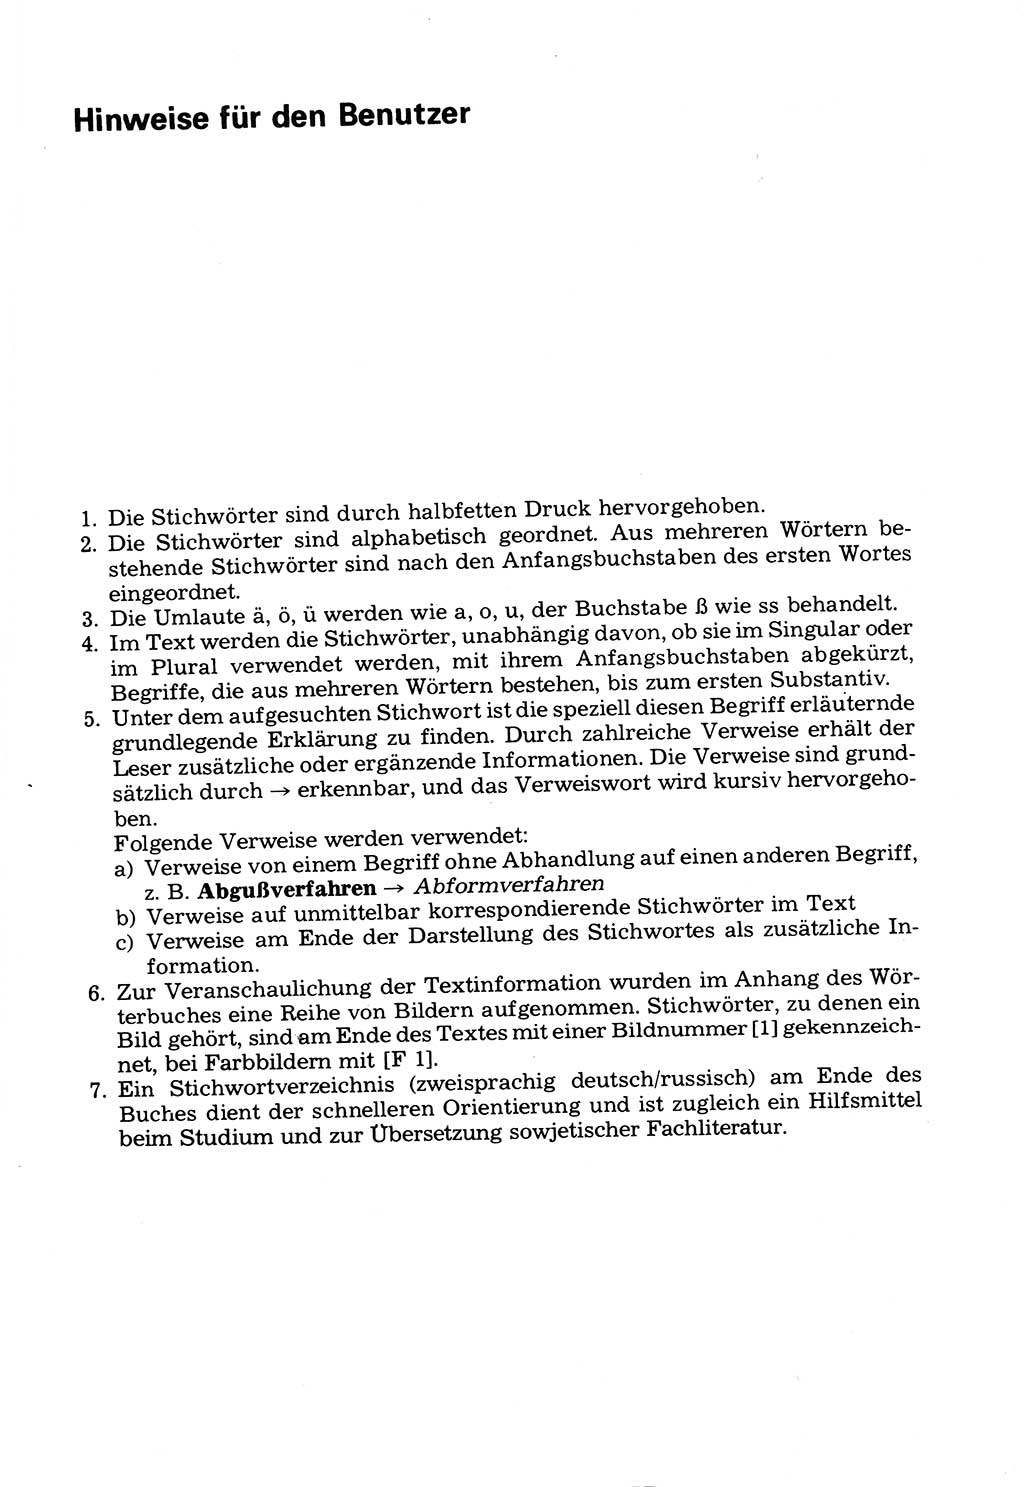 Wörterbuch der sozialistischen Kriminalistik [Deutsche Demokratische Republik (DDR)] 1981, Seite 7 (Wb. soz. Krim. DDR 1981, S. 7)